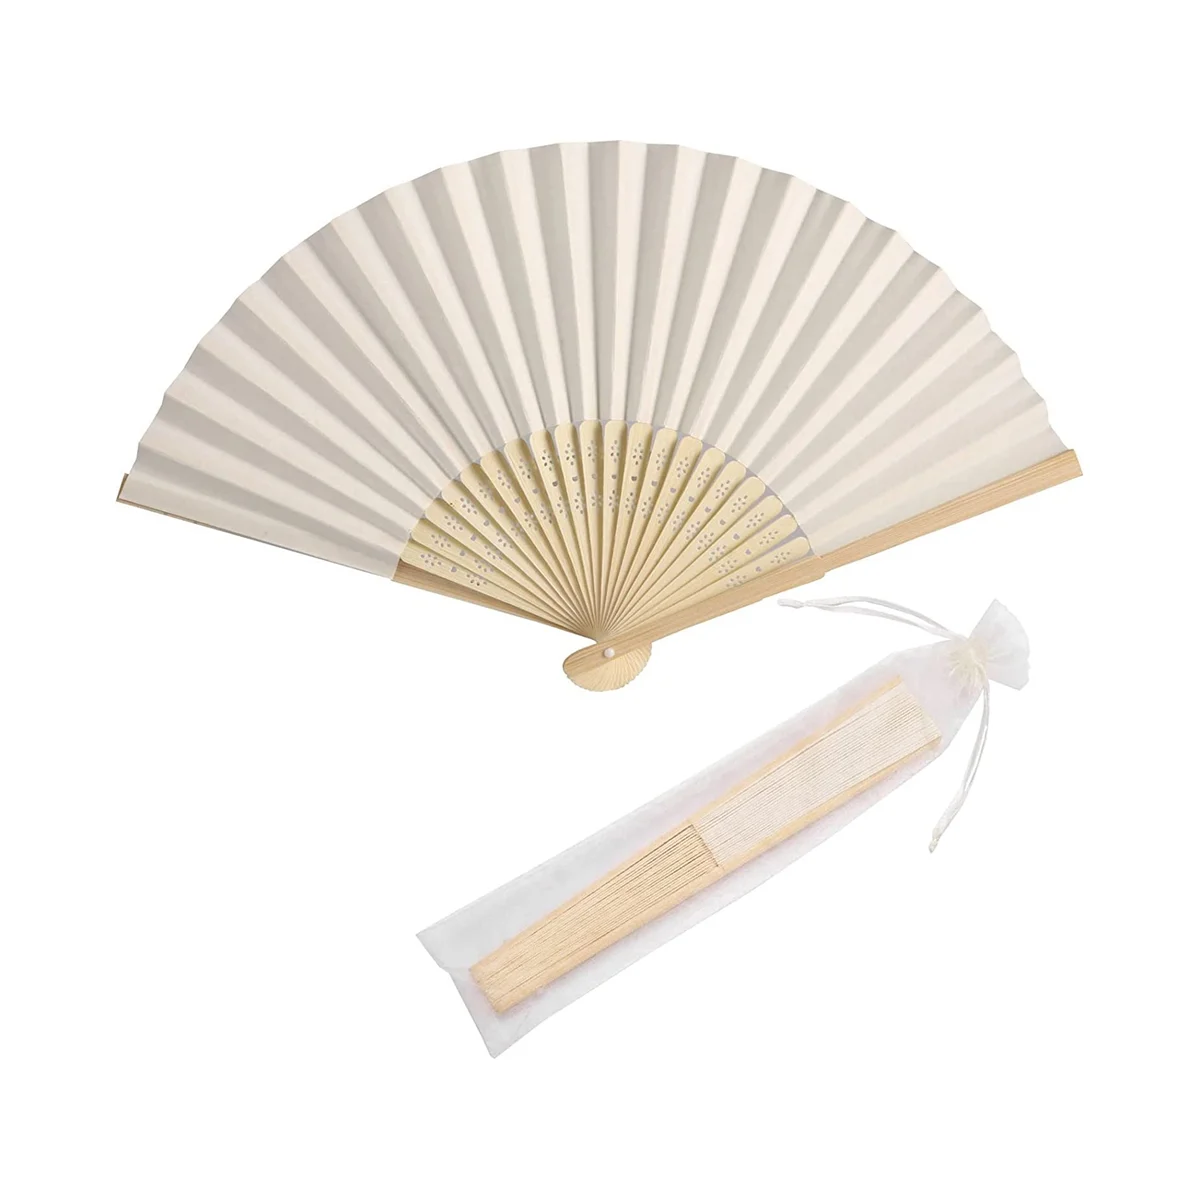 

50Pcs Paper Hand Fan Bamboo Handheld Folded Fan Decorative Paper Fan Wedding Party Favors (Cream)